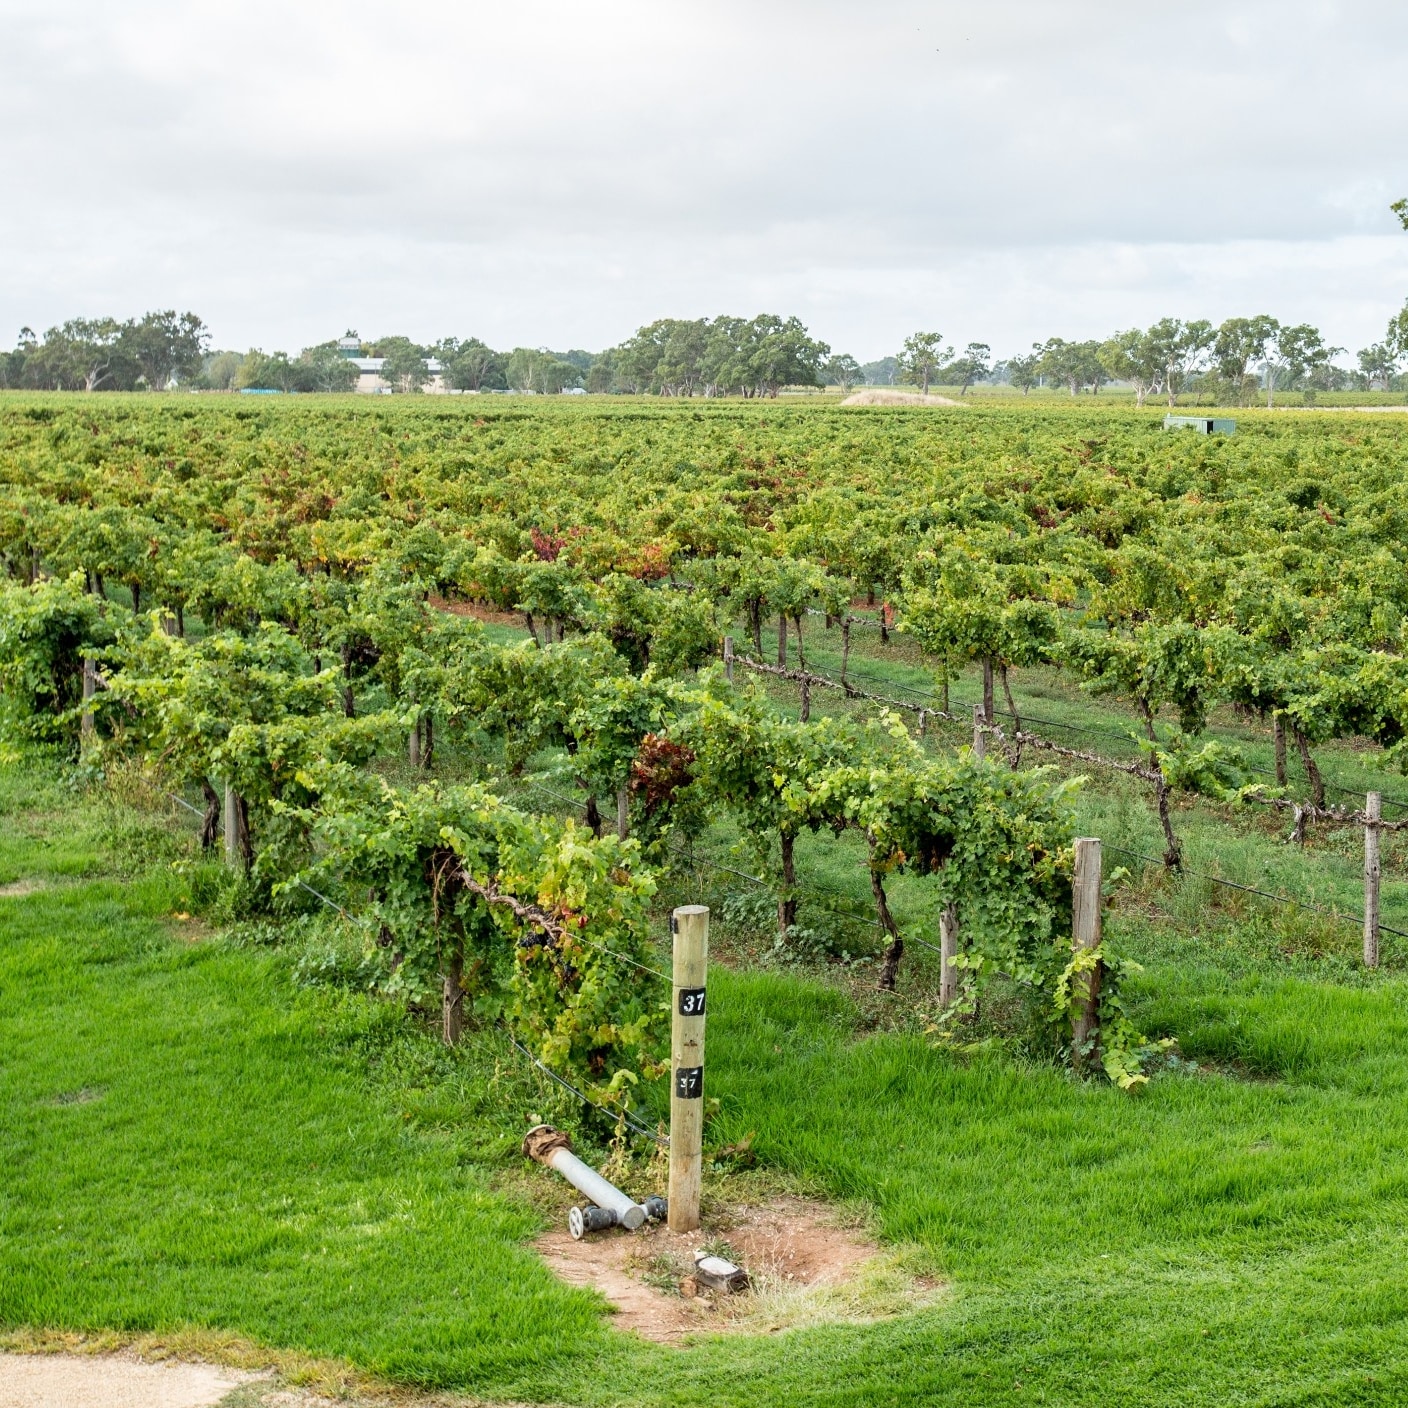 クナワラのワイン産地にあるブドウ園 © Tourism Australia